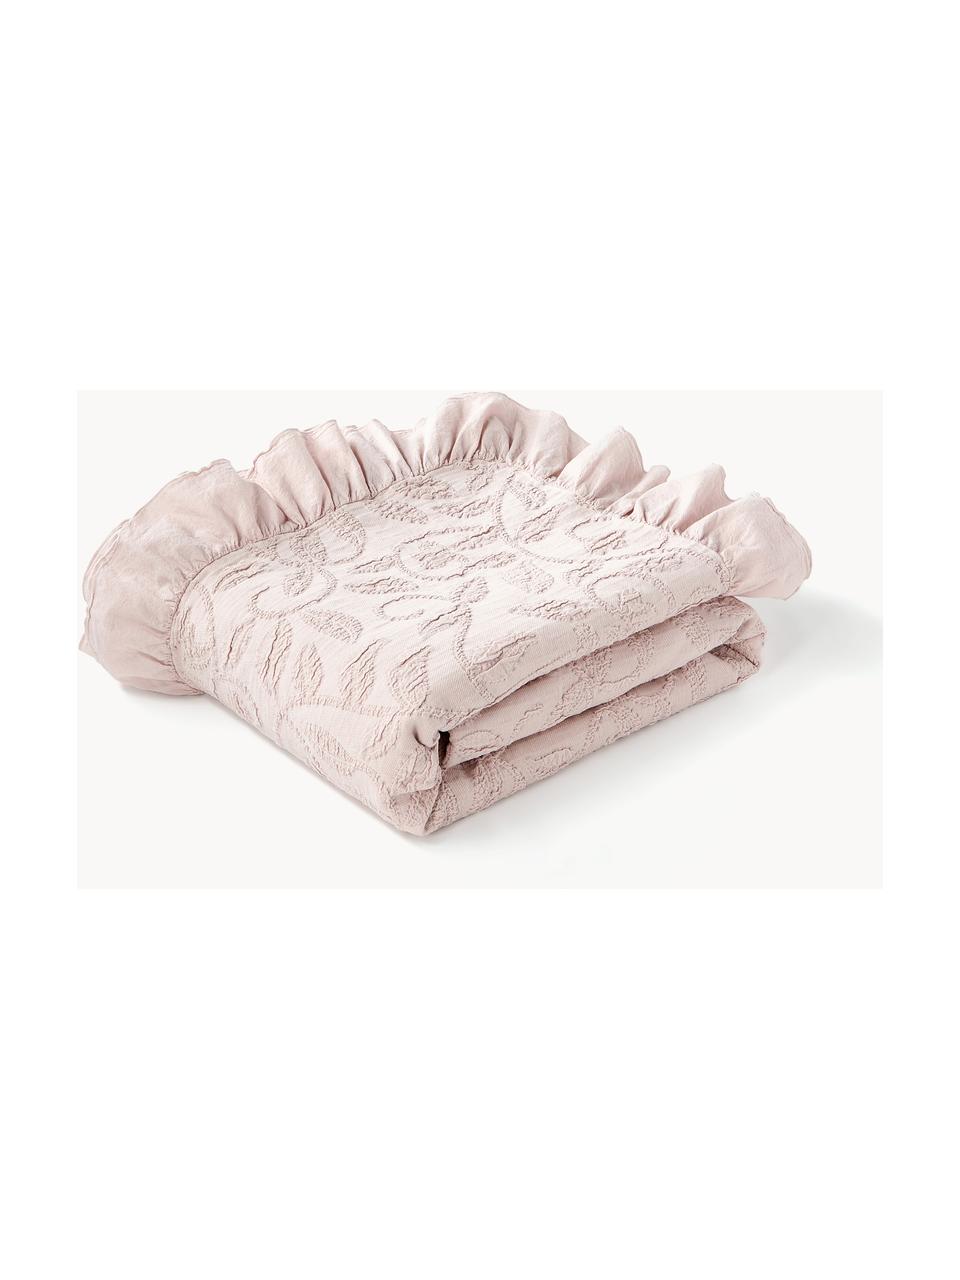 Strukturierte Baumwoll-Decke Clara mit Rüschen und floralem Muster, 99 % Baumwolle, 1% Spandex, Altrosa, B 180 x L 250 cm